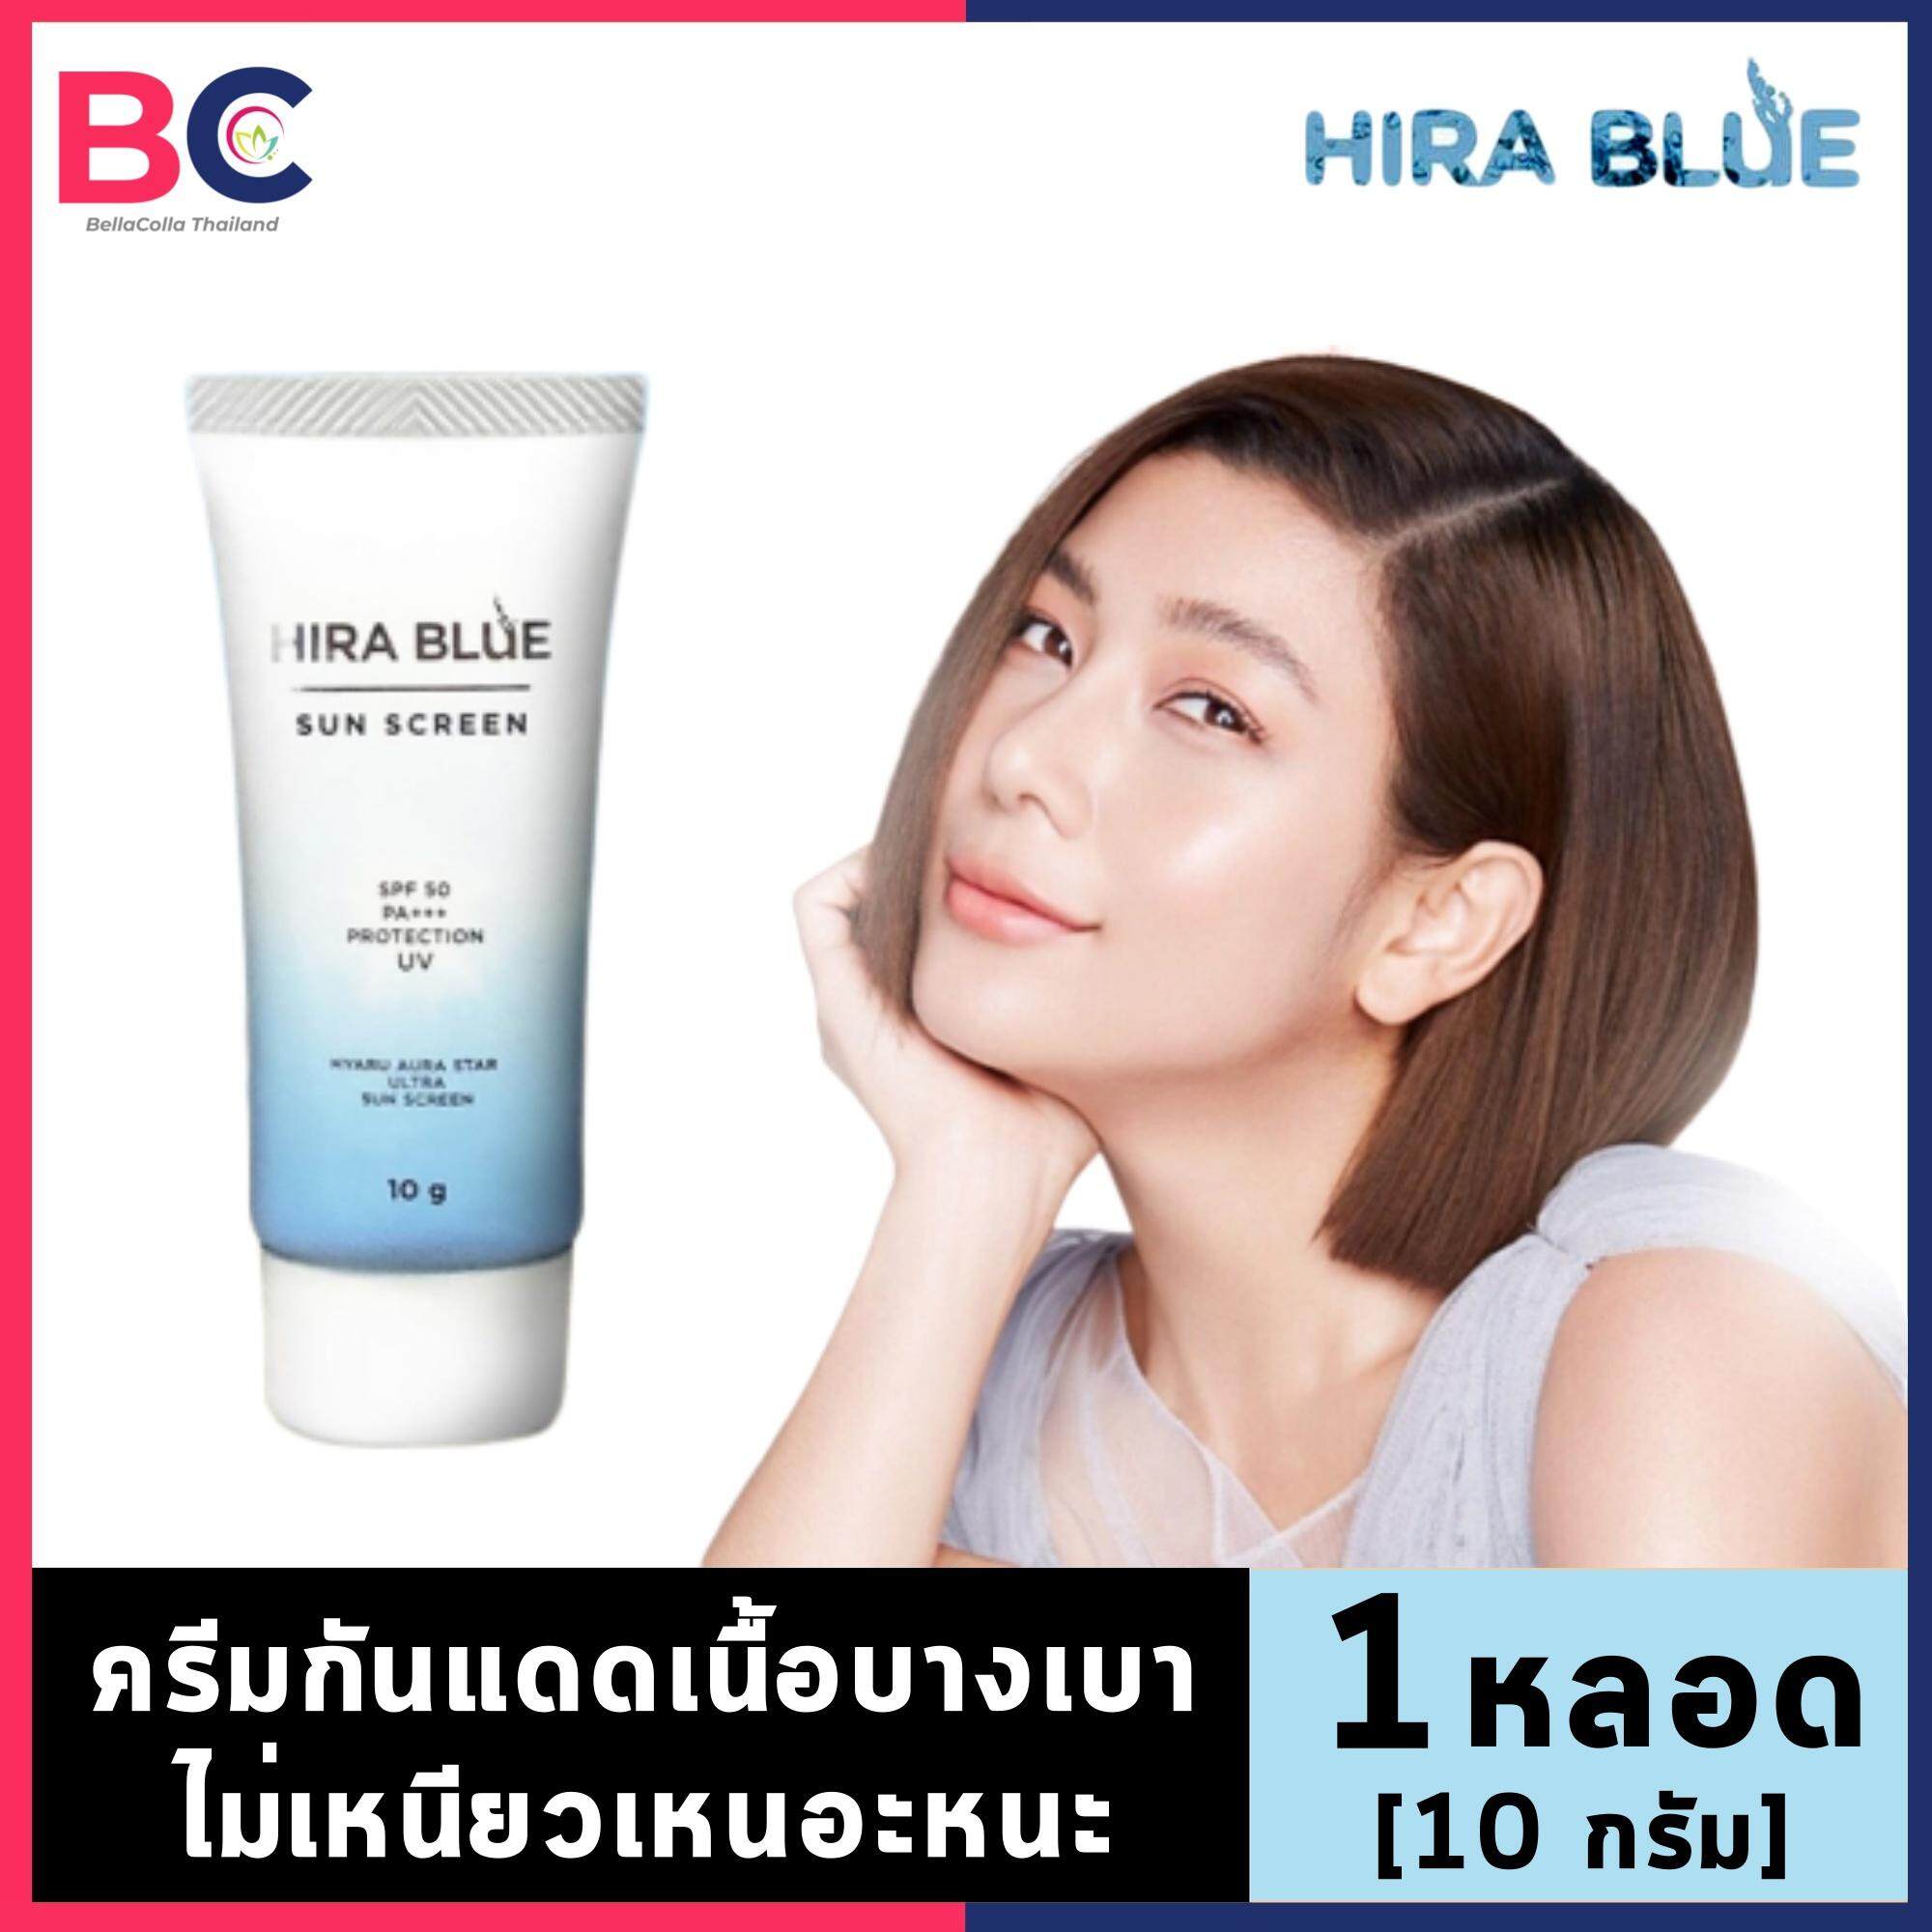 ครีมกันแดด Hira Blue [10 กรัม] [1 หลอด] ครีมกันแดดหน้า เนื้อบางเบา ไม่เหนียวเหนอะหนะ กันน้ำ กันเหงื่อ ป้องกันแสงสีฟ้าจากจอมือถือ Hira Blue Sun Screen SPF 50 PA++ Protection UV 10 by BellaColla Thailand